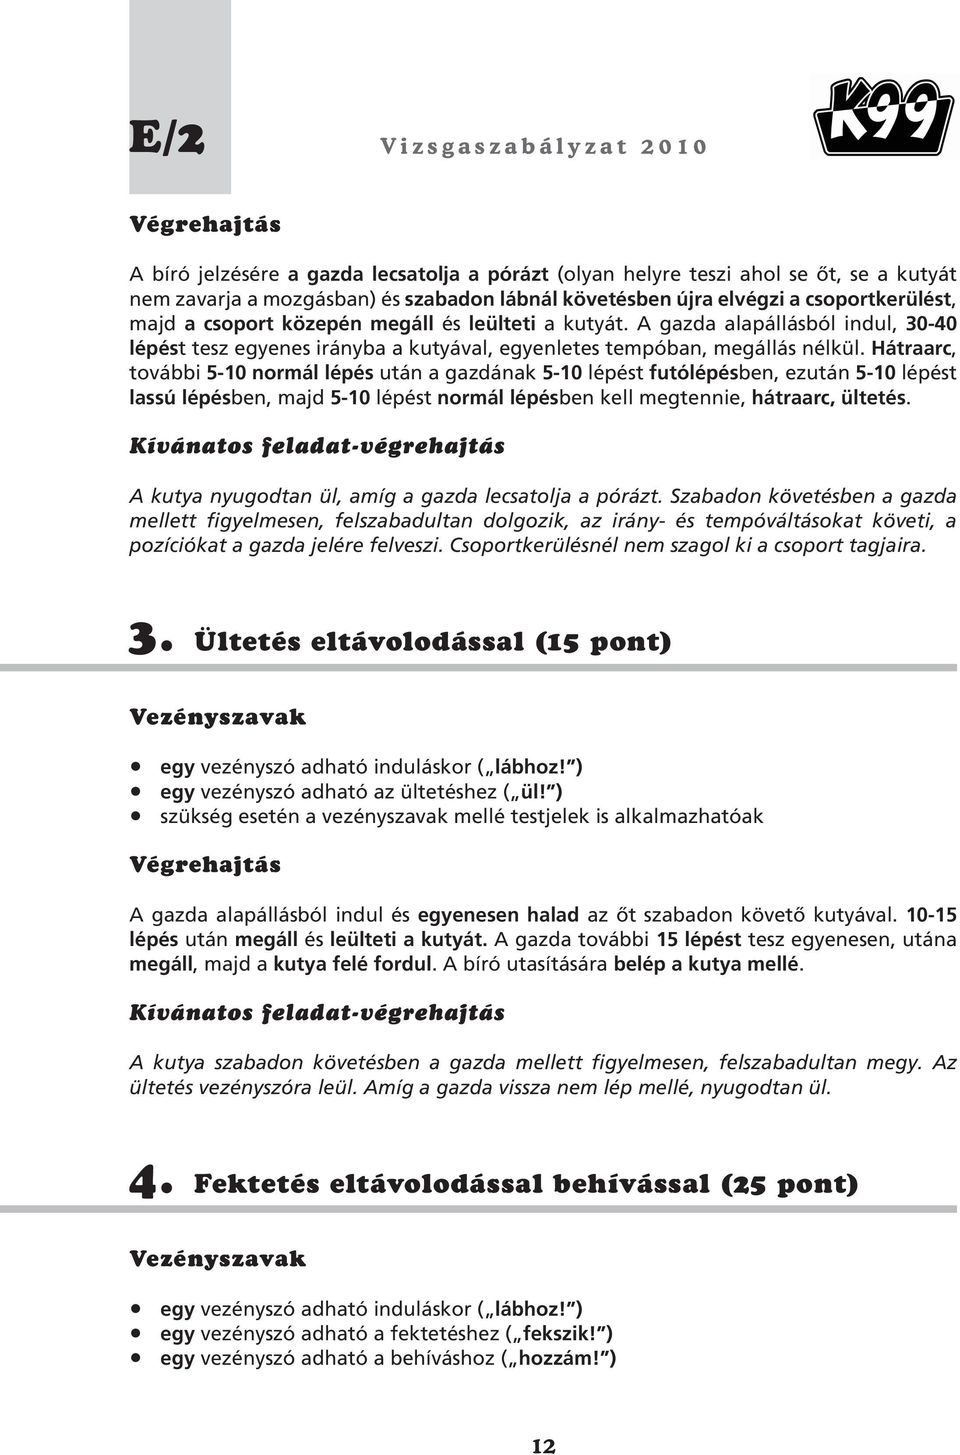 Vizsgaszabályzat. Jelen vizsgarendszer kidolgozásában közremûködtek: K3  Kinológia Egyesület. K99 Egyesület - PDF Ingyenes letöltés